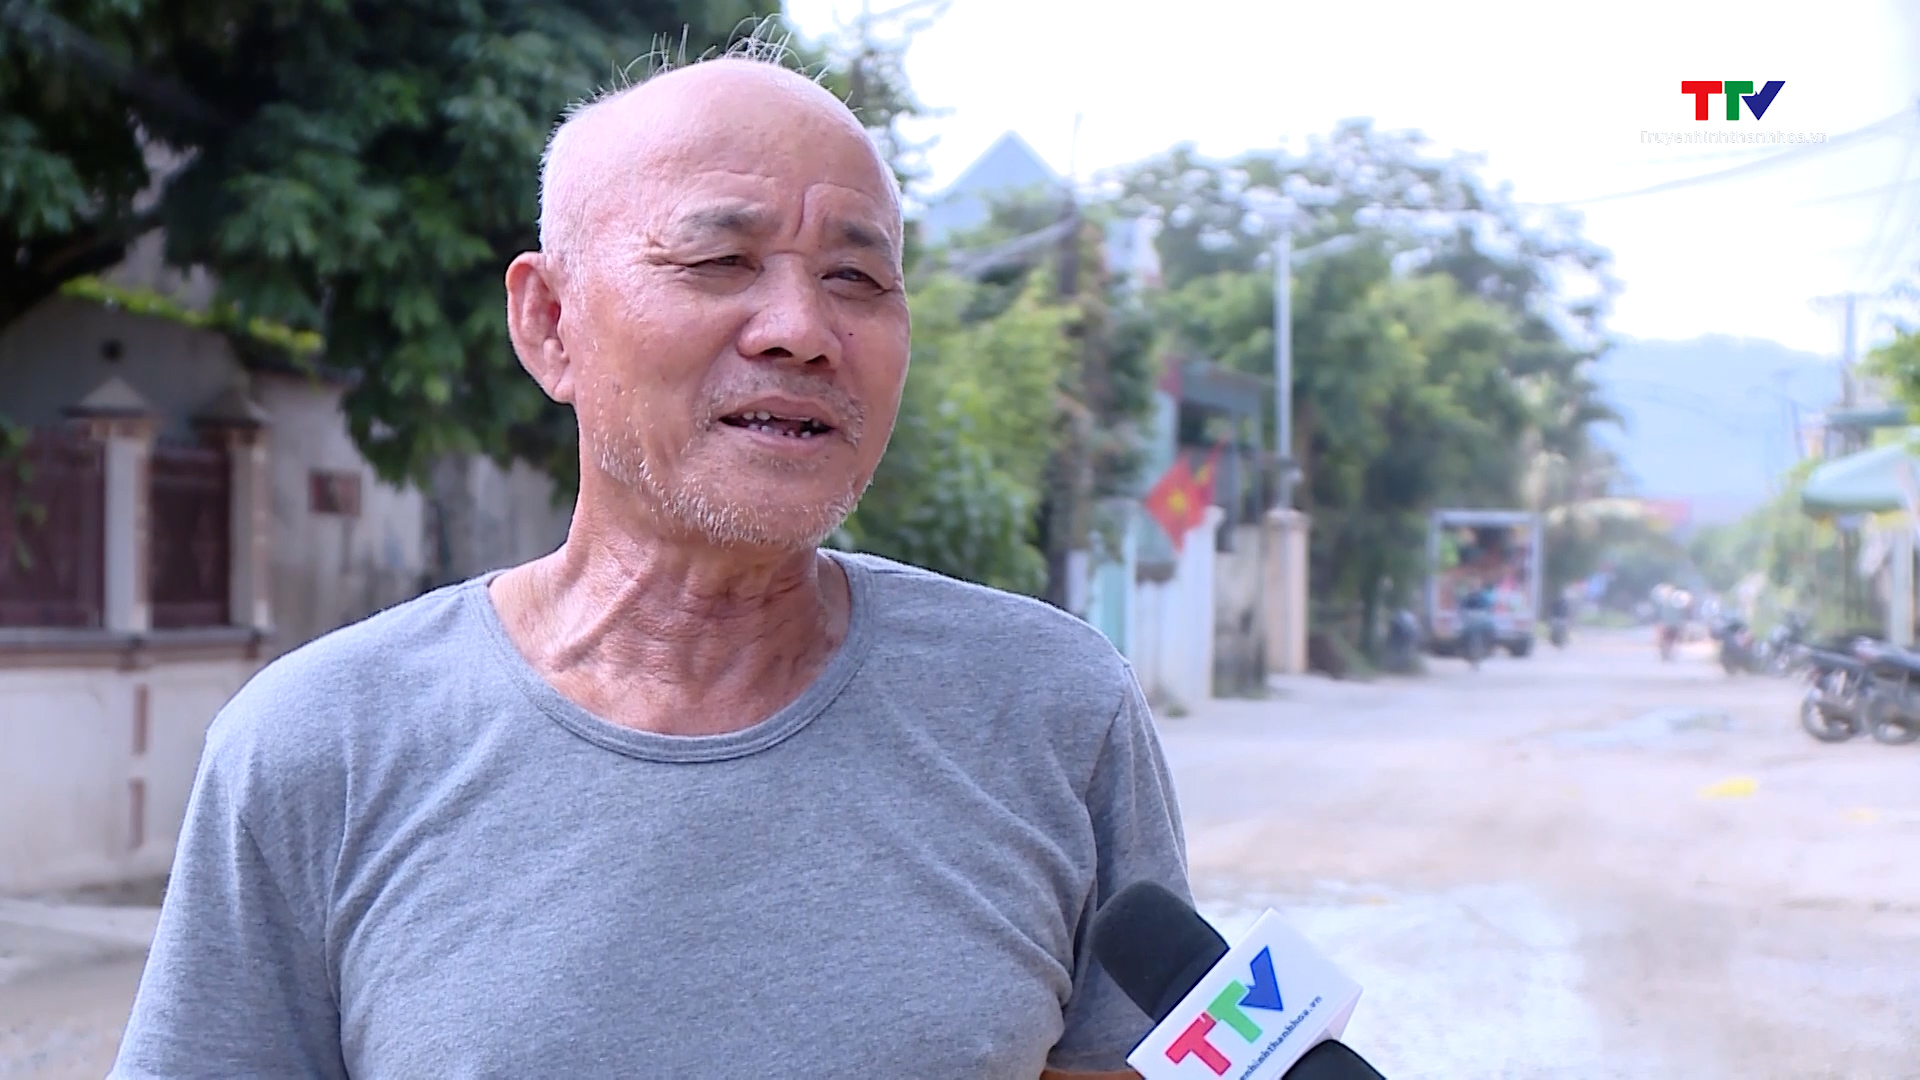 Đường tỉnh 526 qua xã Minh Lộc, huyện Hậu Lộc xuống cấp, gây ảnh hưởng đời sống nhân dân  - Ảnh 2.